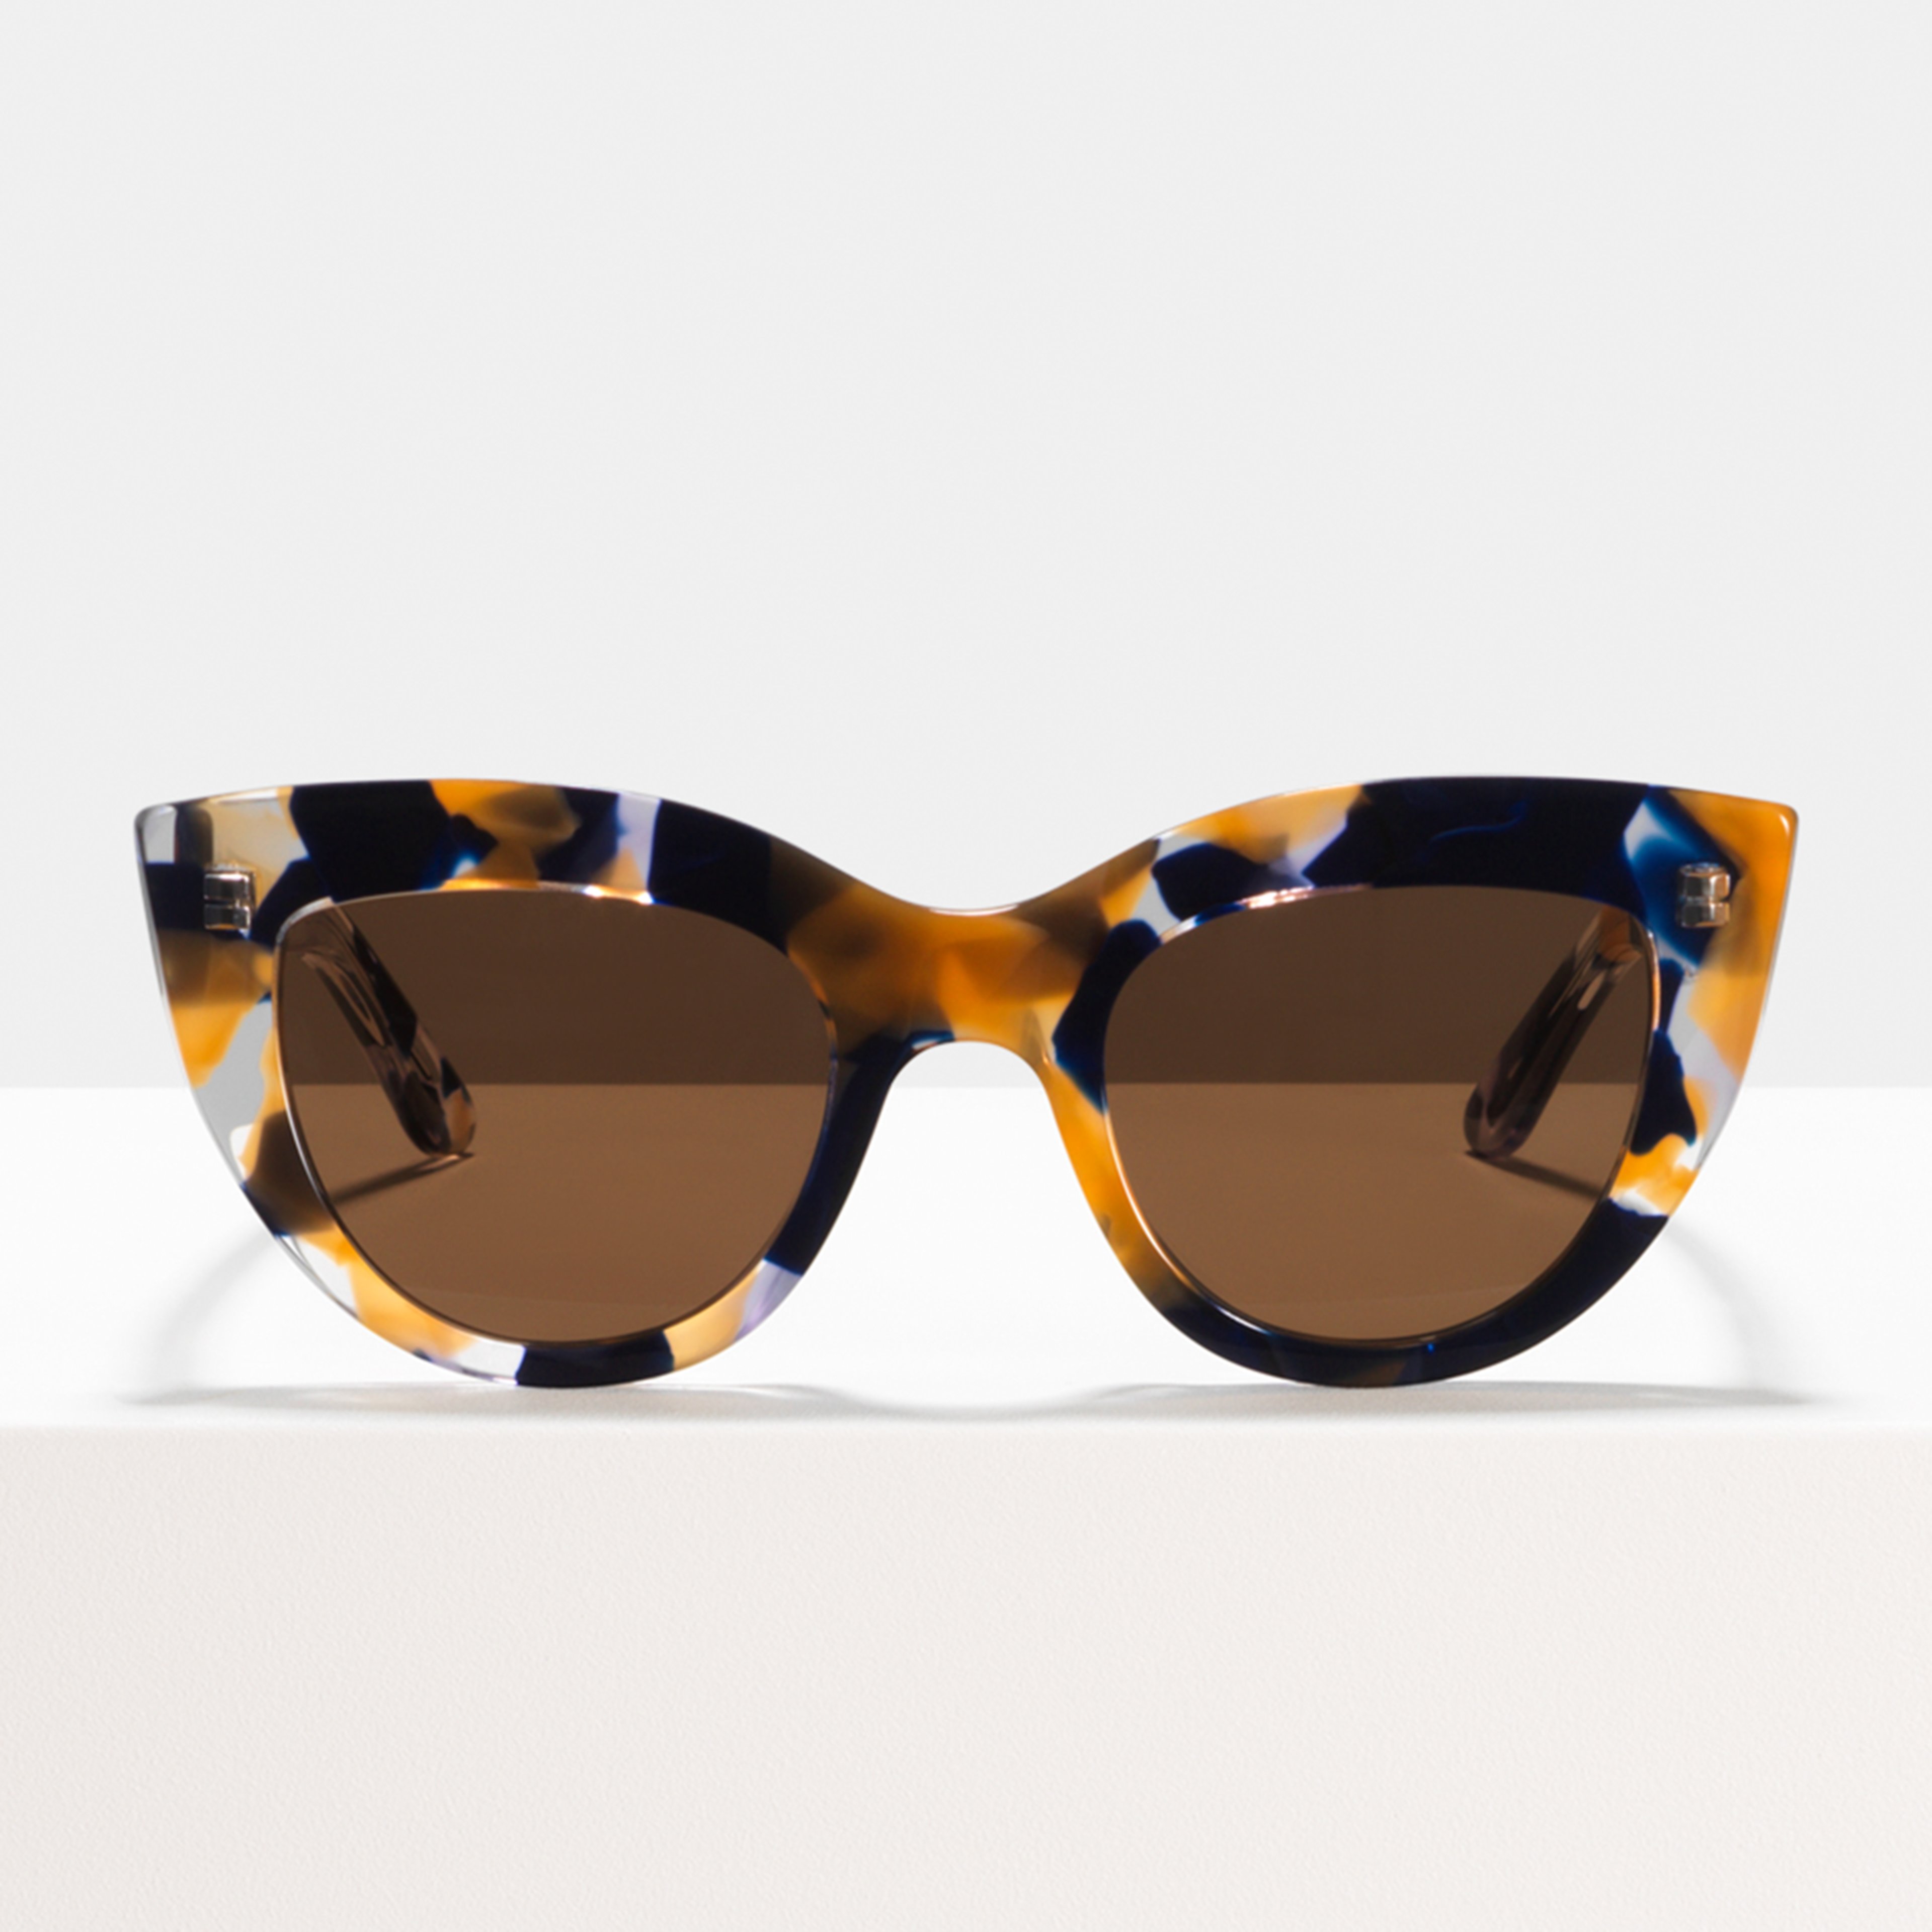 Ace & Tate Sonnenbrillen |  Acetat in Braun, Orange, Violett